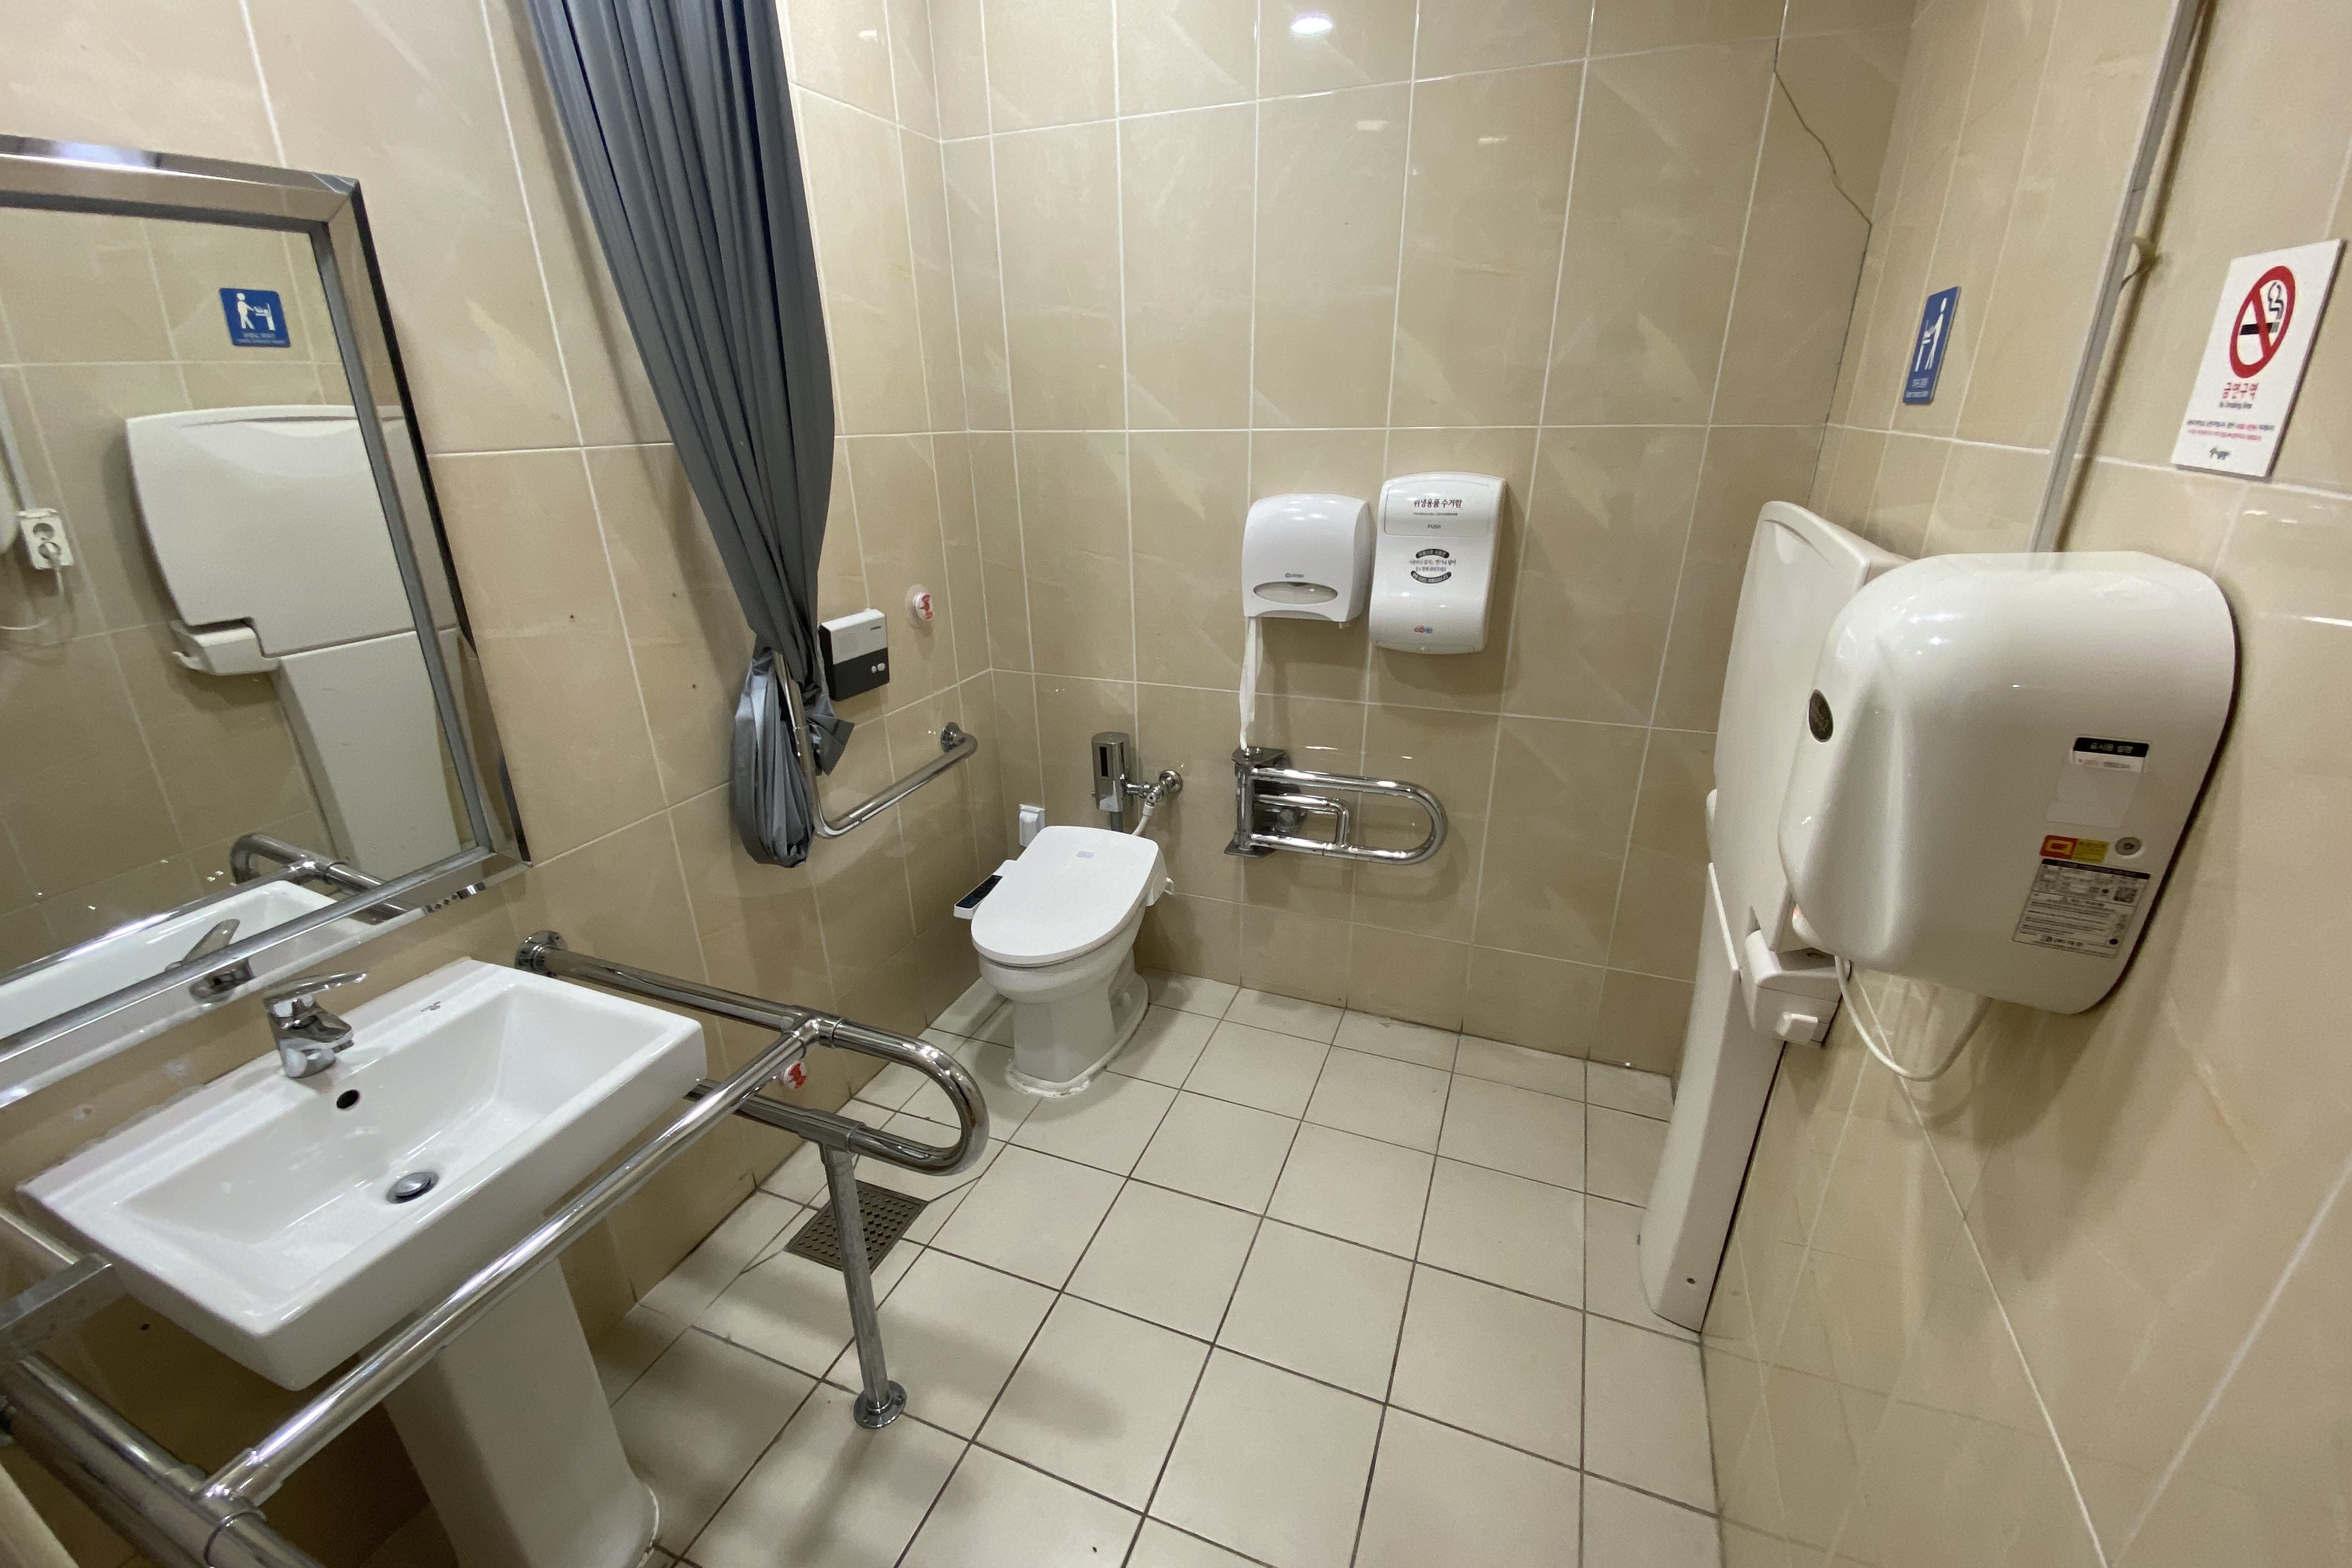 장애인 화장실0 : 다소 좁은 공간의 북서울꿈의숲 장애인화장실 내부 전경